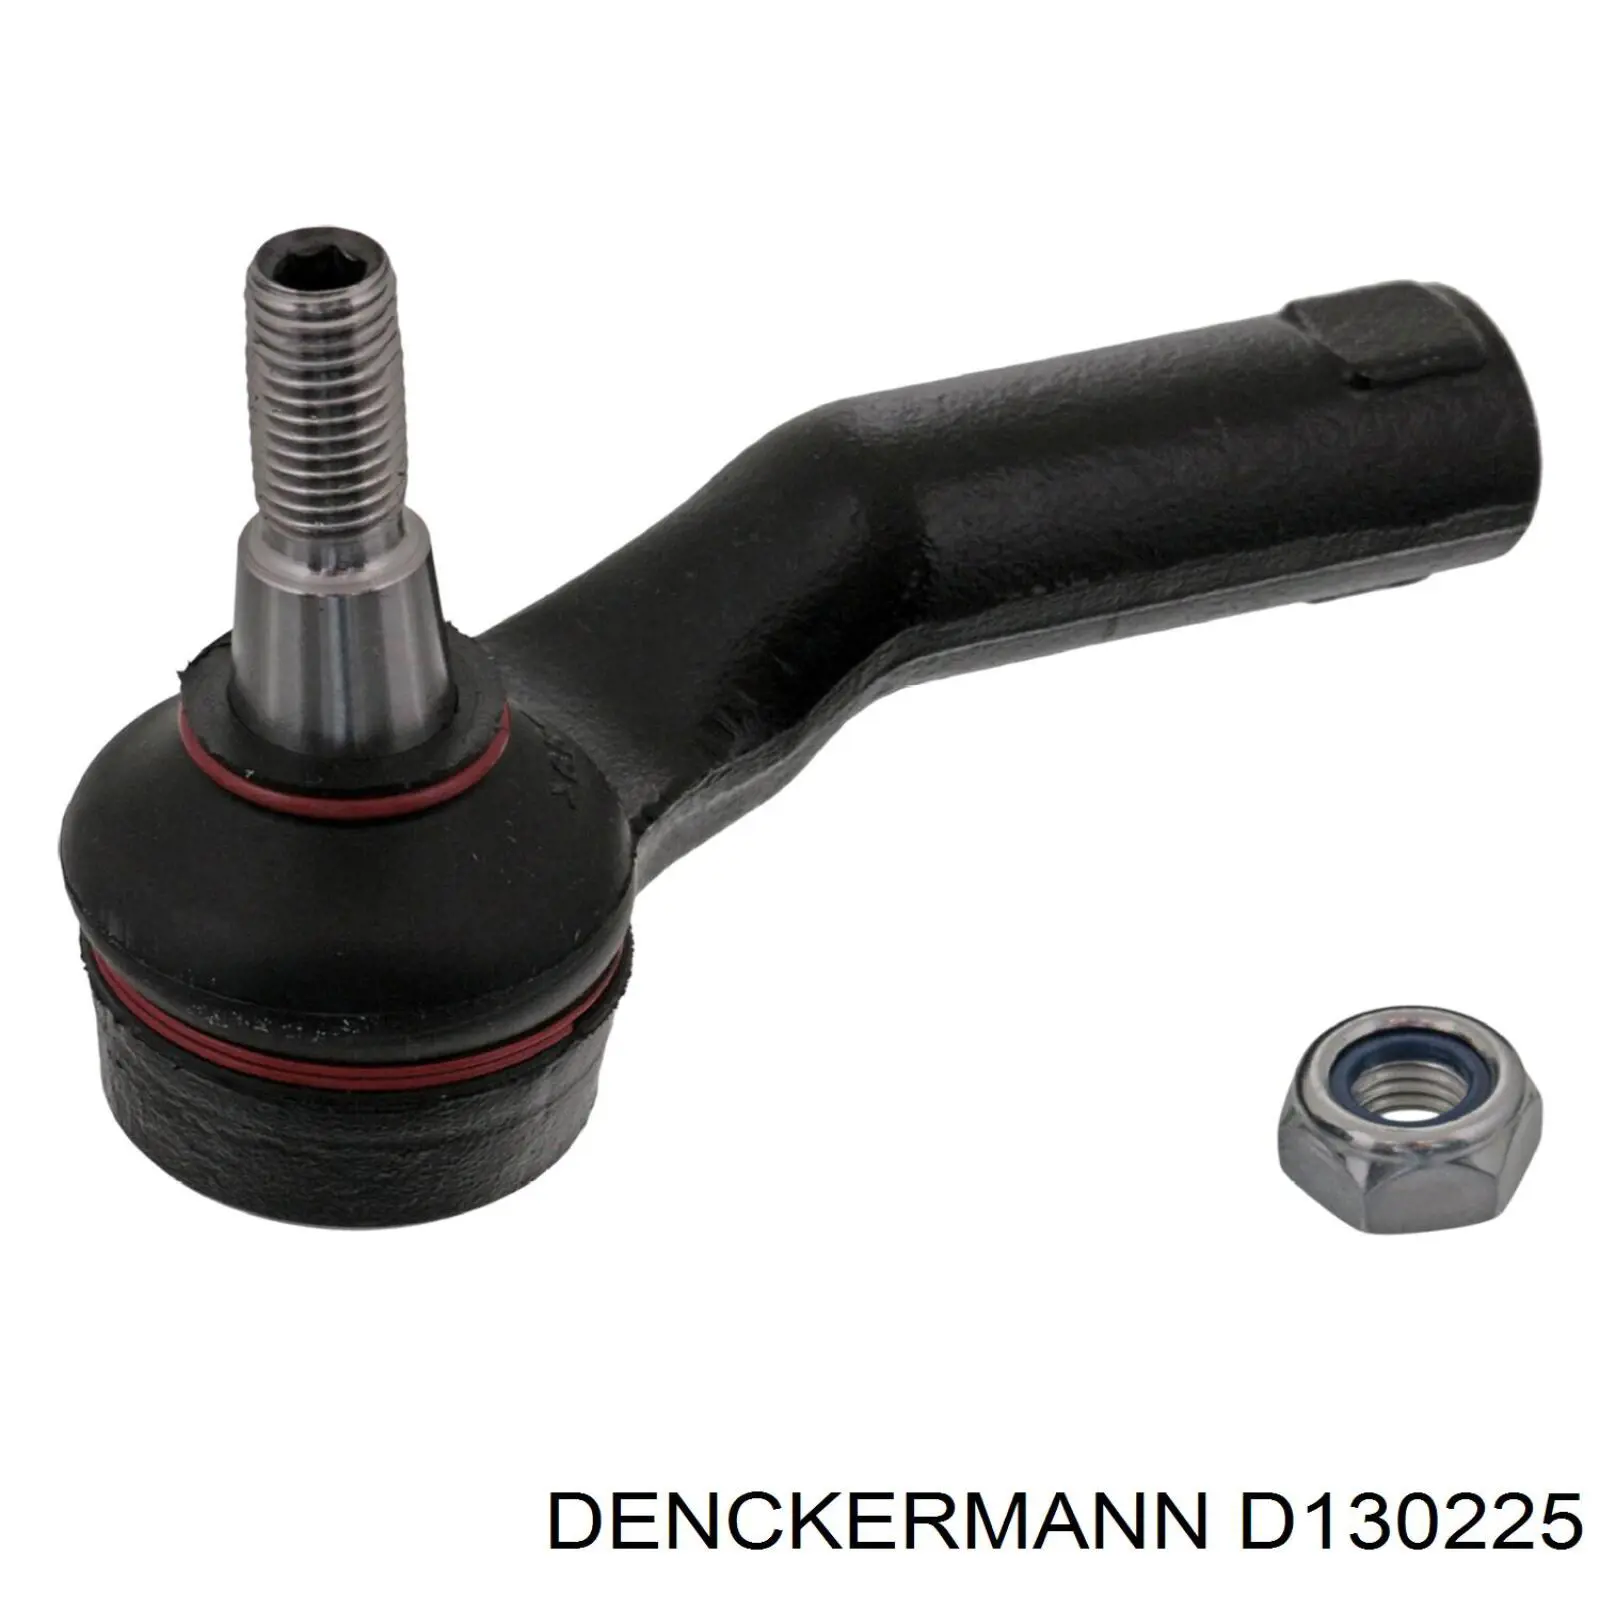 D130225 Denckermann rótula barra de acoplamiento exterior